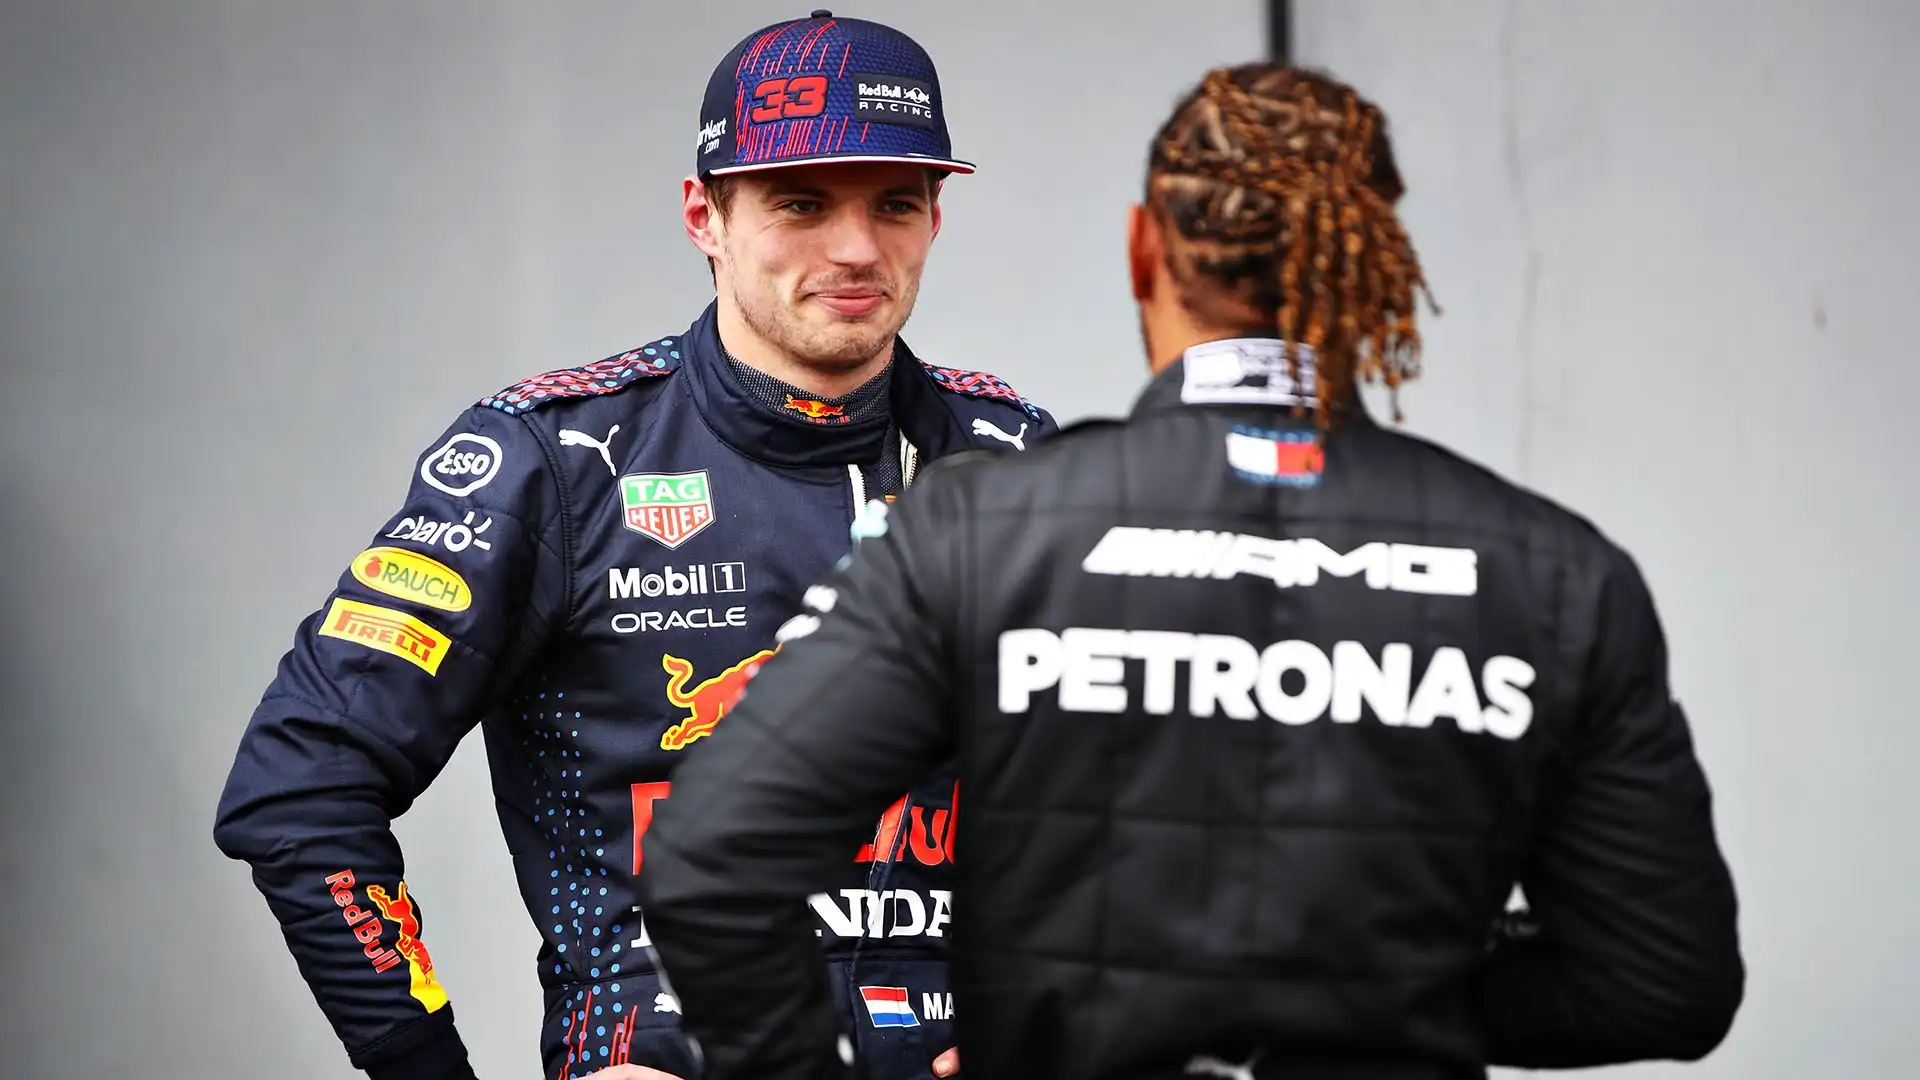 Secondo Verstappen, Ferrari e Lewis Hamilton sono stati costretti ad anticipare l'annuncio a causa di una fuga di notizie